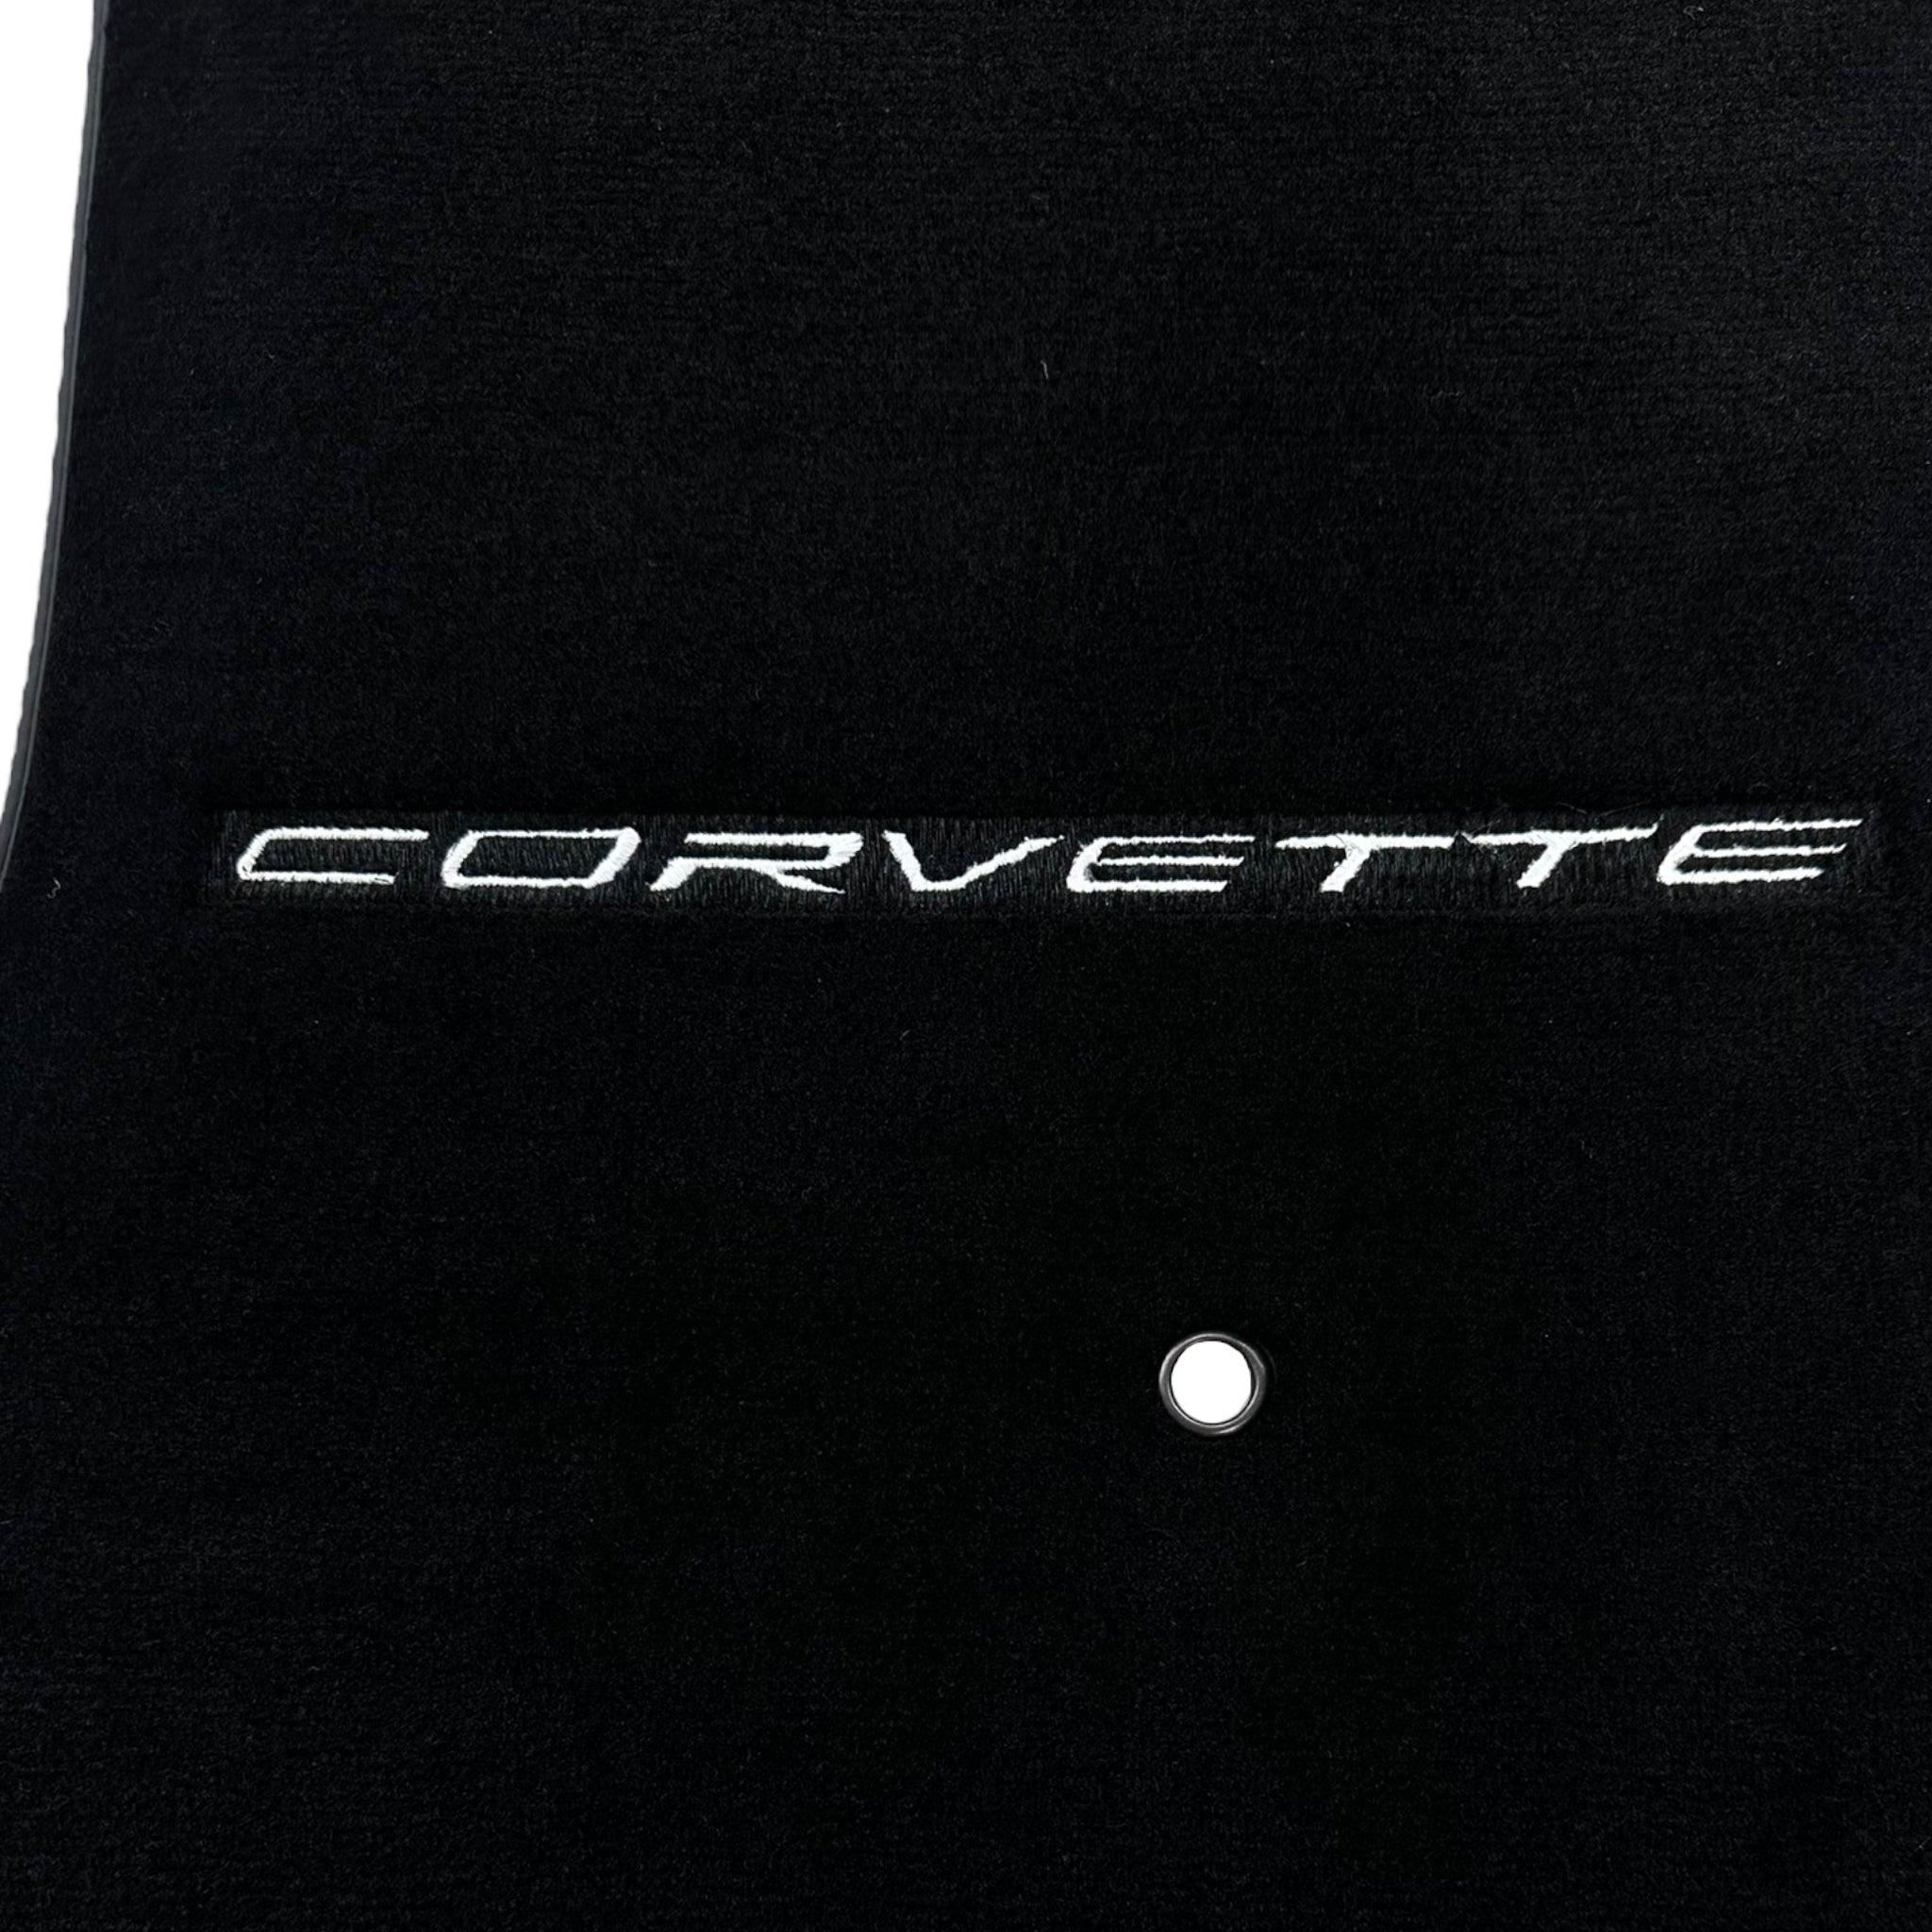 Black Floor Mats For Chevrolet Corvette C6 (2005-2013)